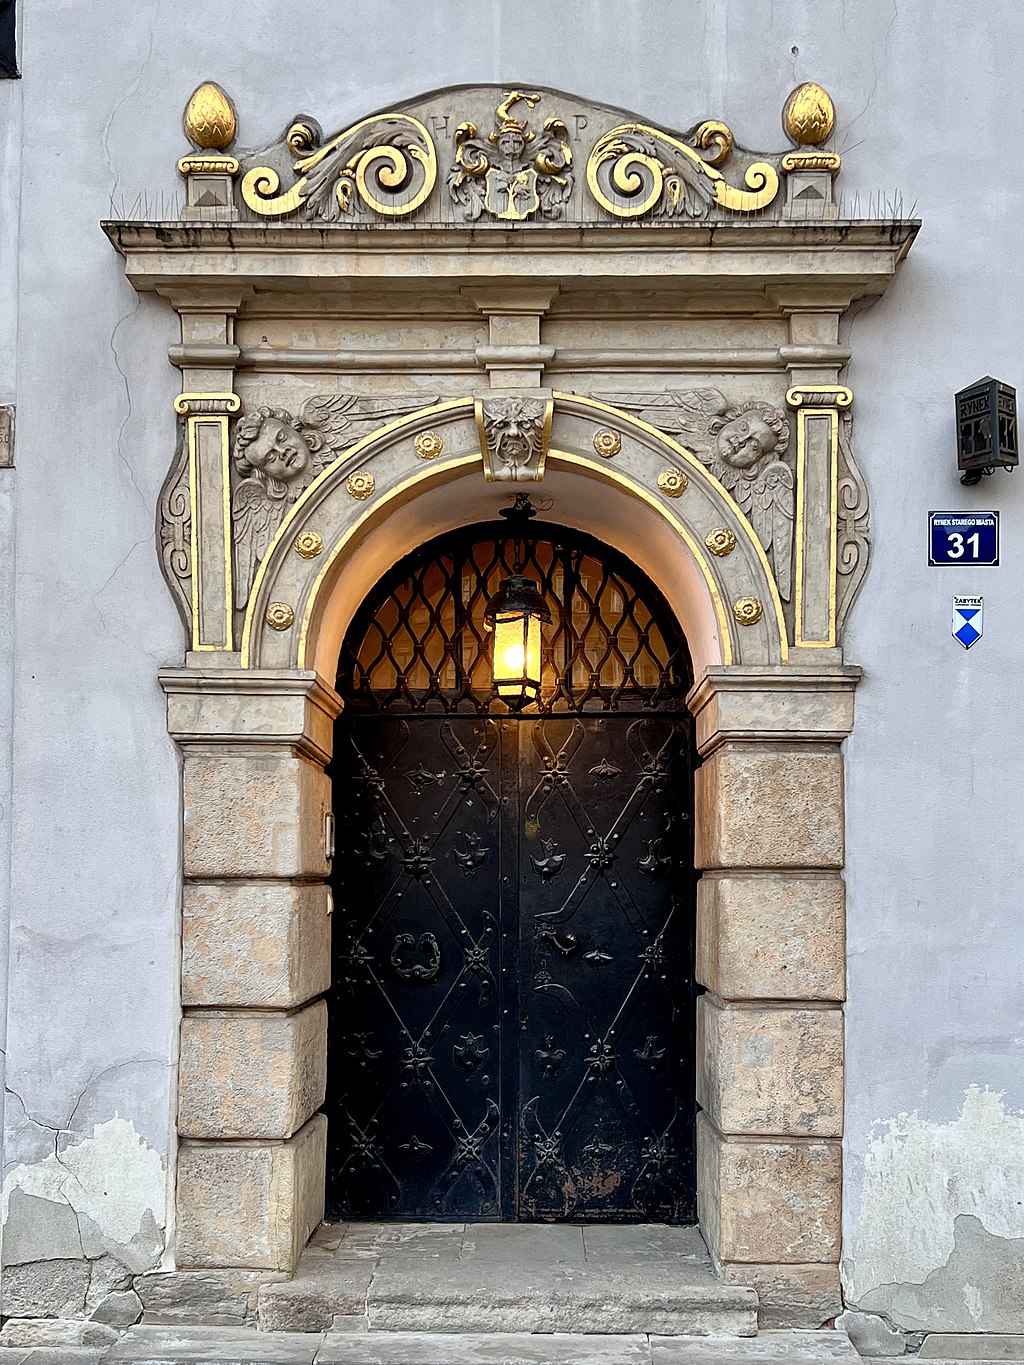 Kolorowe zdjęcie portalu bramnego Kamienicy pod św. Anną pochodzące z roku 2022